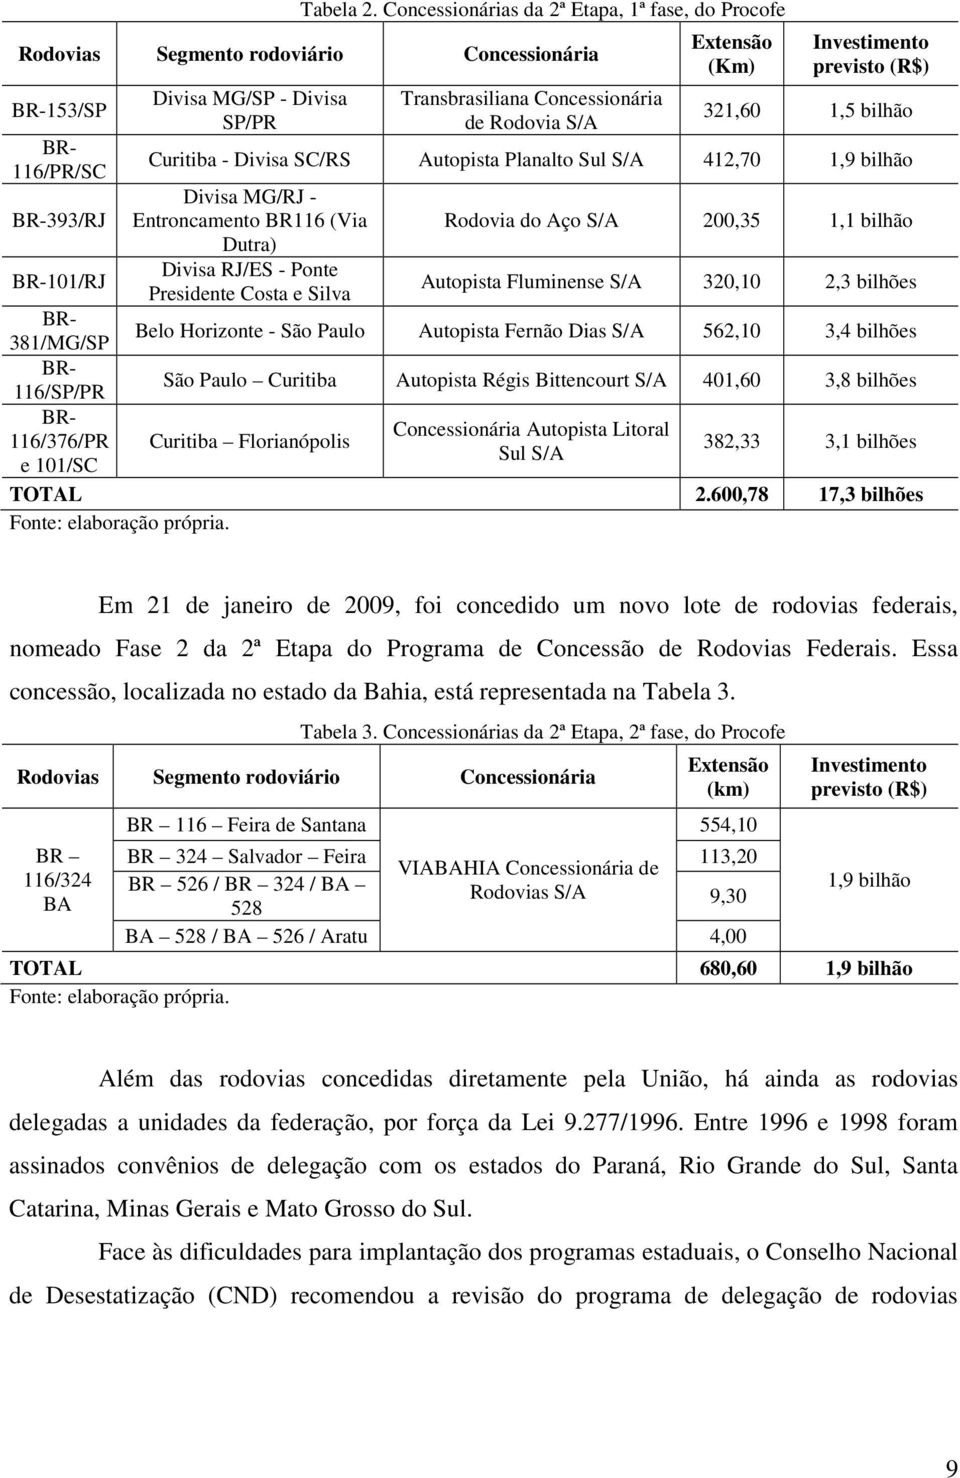 MG/SP - Divisa SP/PR Transbrasiliana Concessionária de Rodovia S/A Extensão (Km) Investimento previsto (R$) 321,60 1,5 bilhão Curitiba - Divisa SC/RS Autopista Planalto Sul S/A 412,70 1,9 bilhão